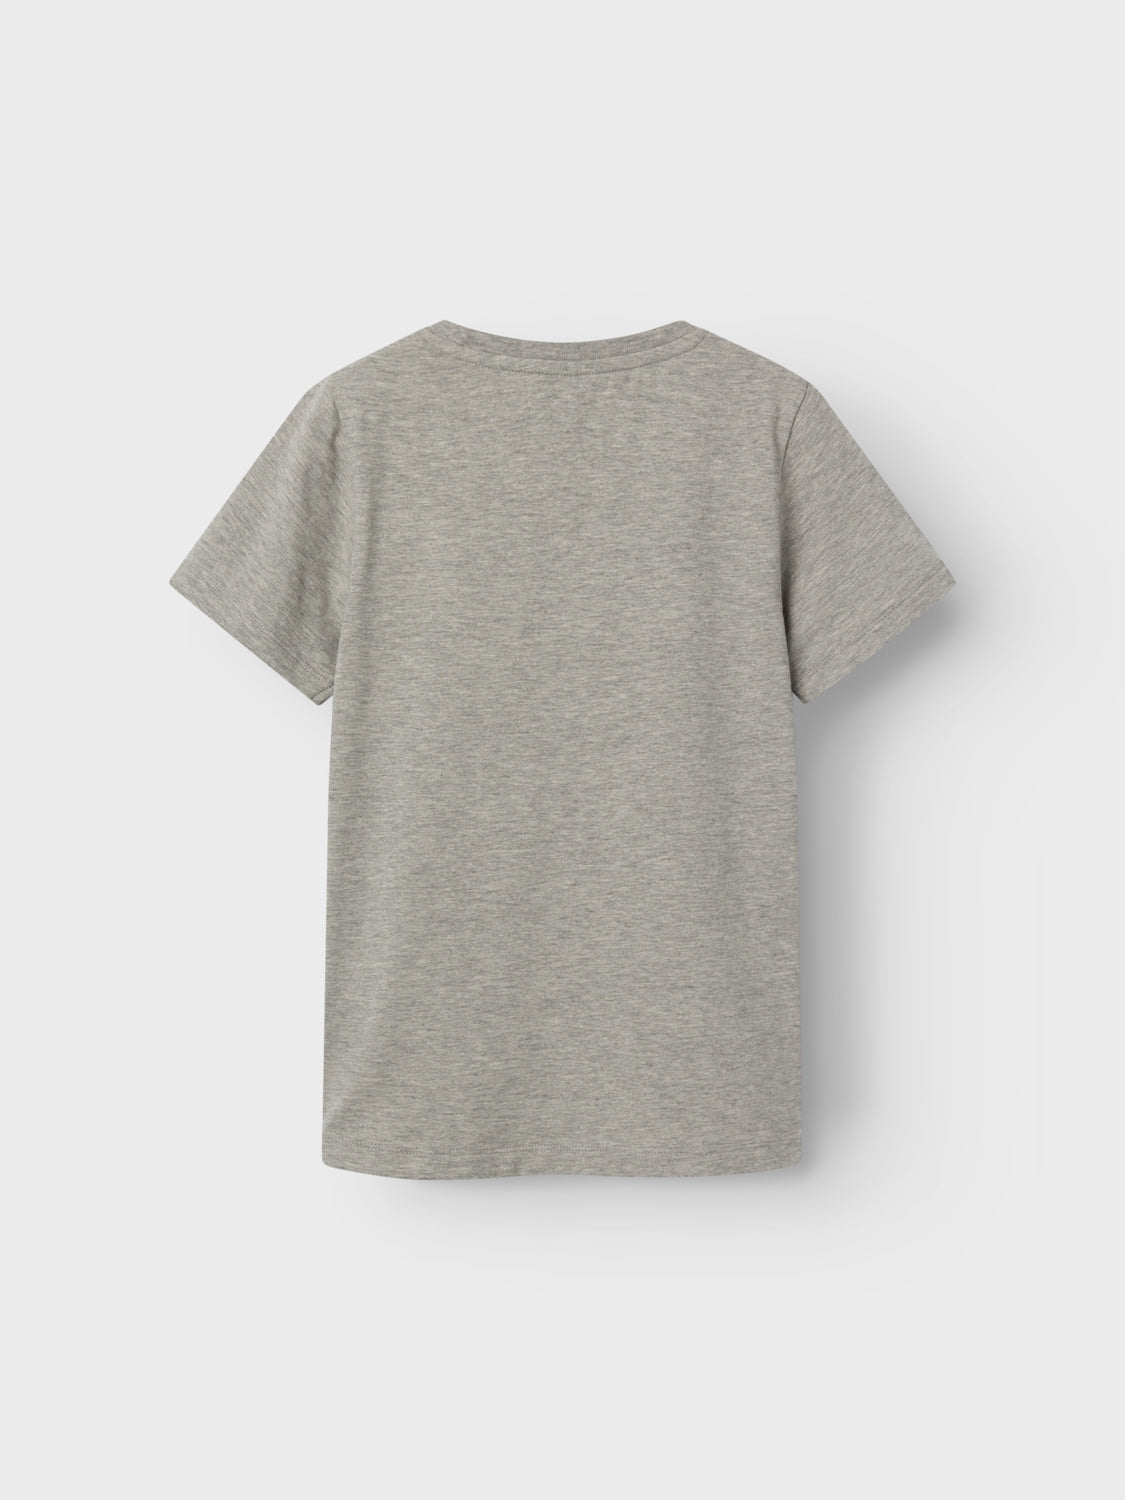 NKMJYXTON T-Shirts & Tops - Grey Melange